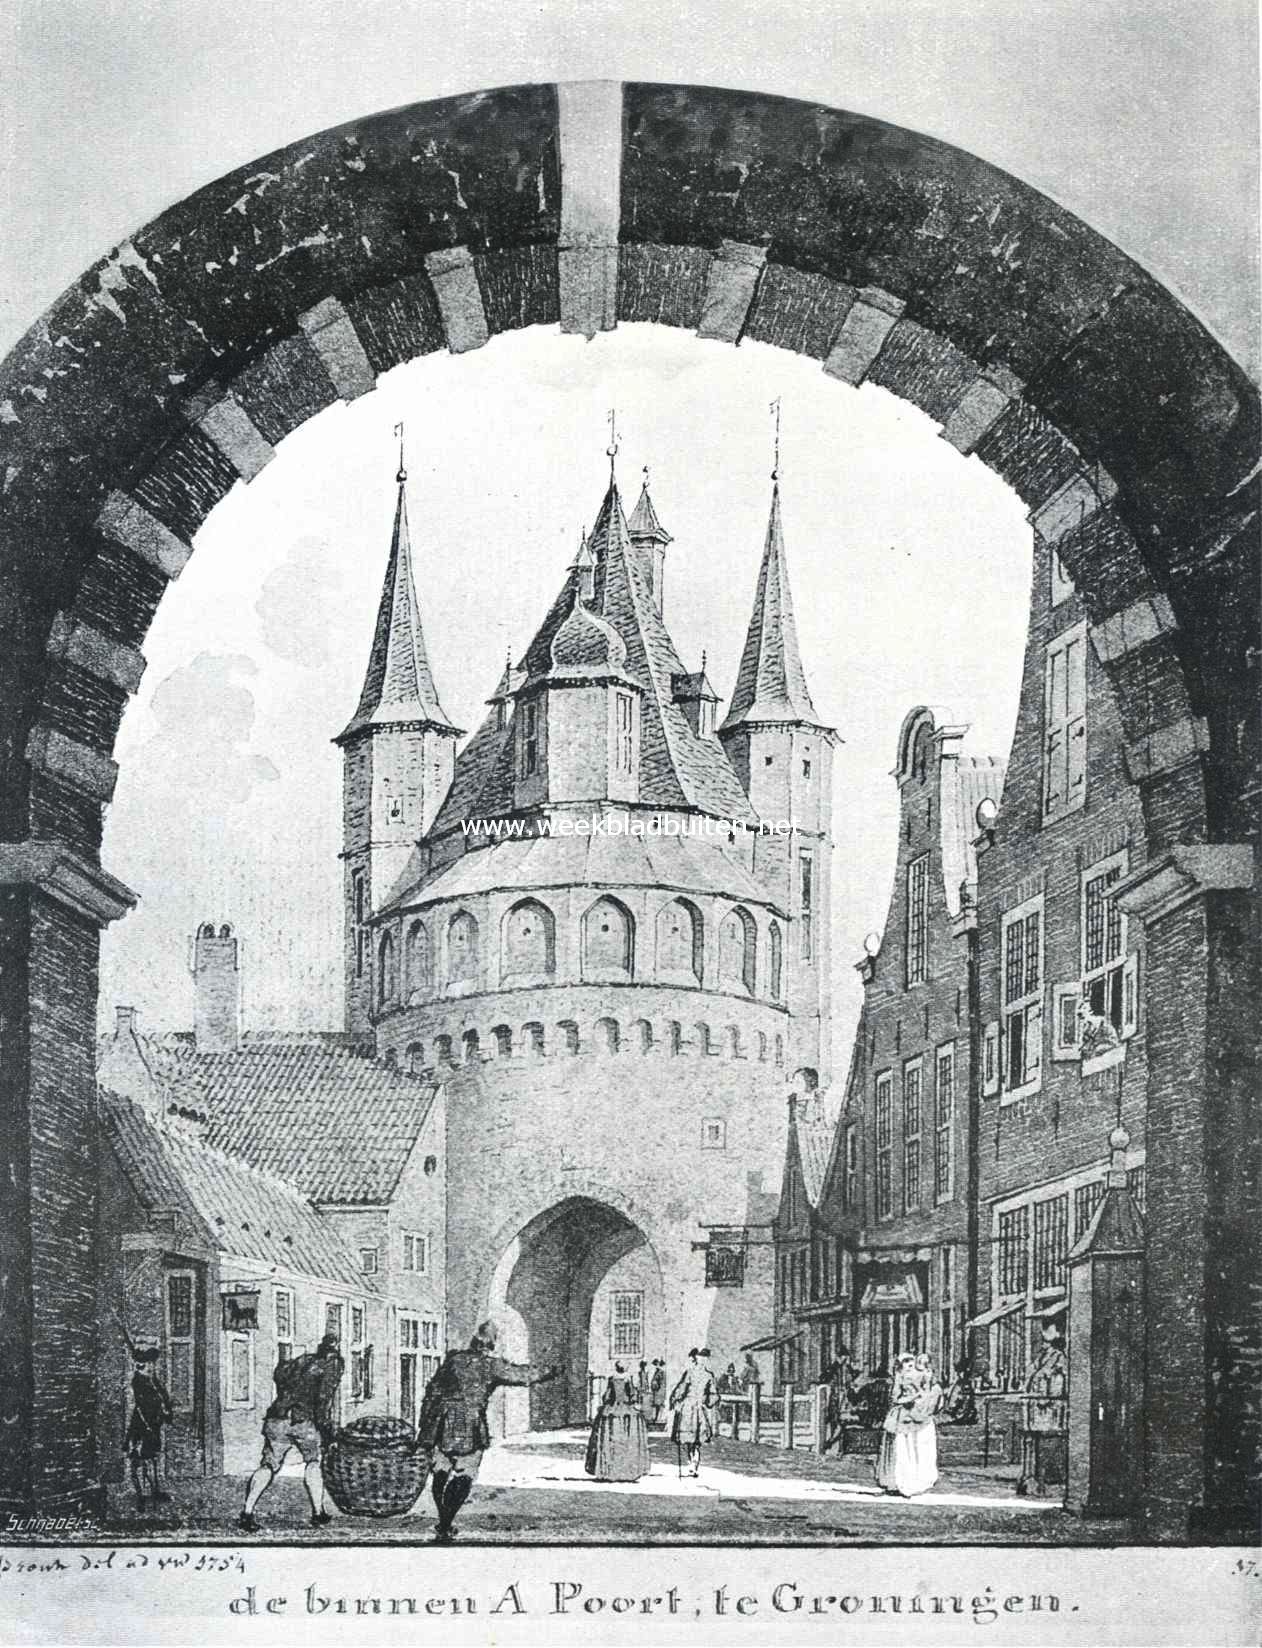 Sloopend herboren-Nederland. Gezicht op de voormalige Binnen A-poort te Groningen, gesloopt in 1828